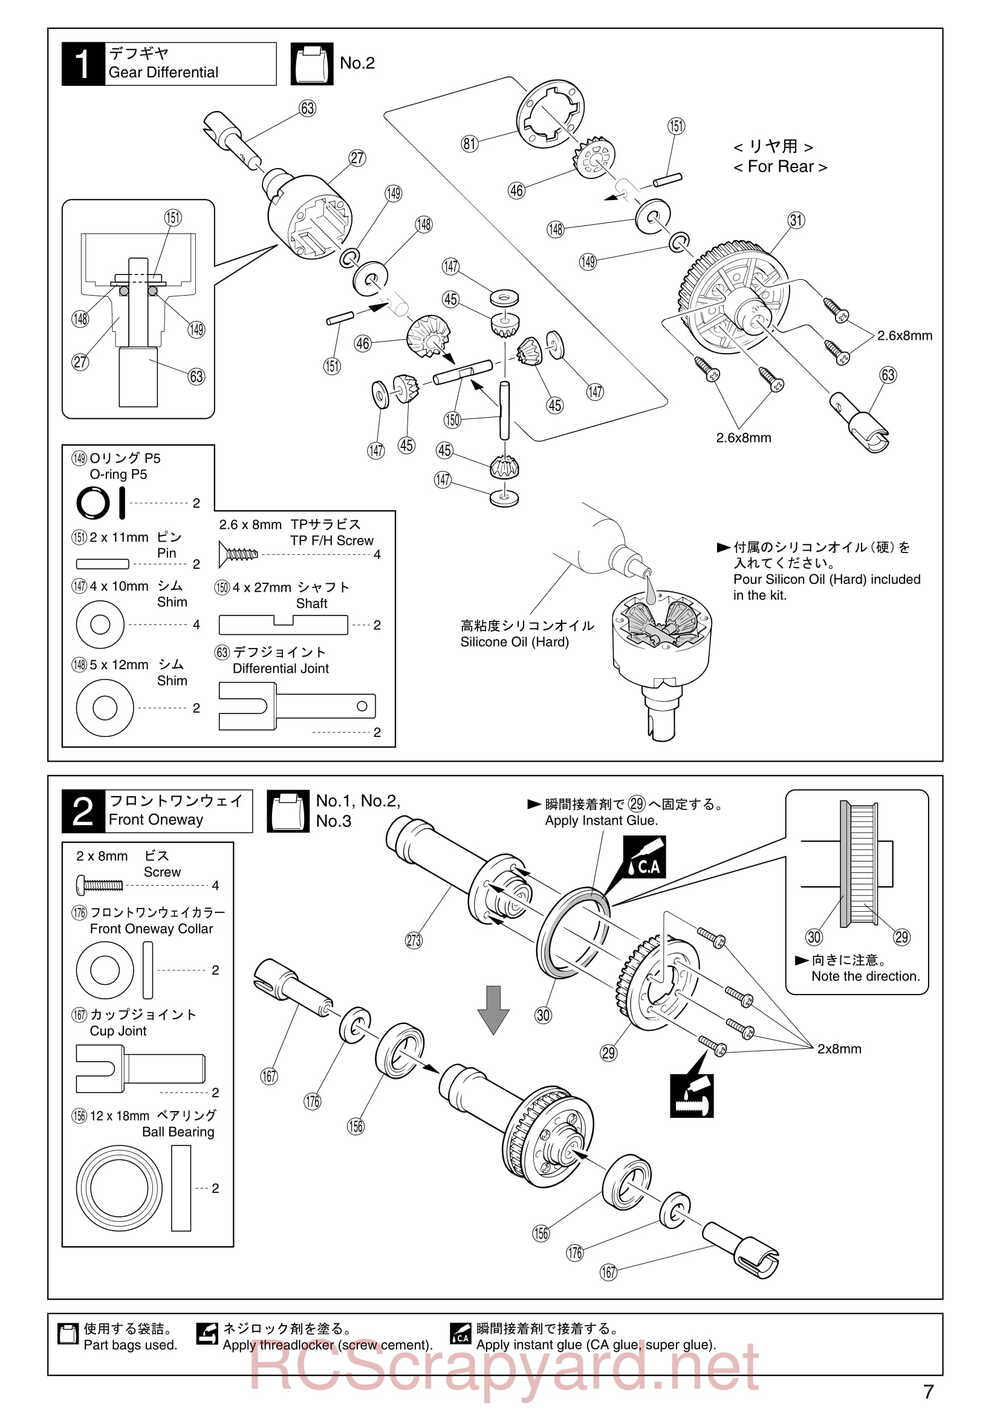 Kyosho - 31255 - V-One RR Evolution - Manual - Page 07